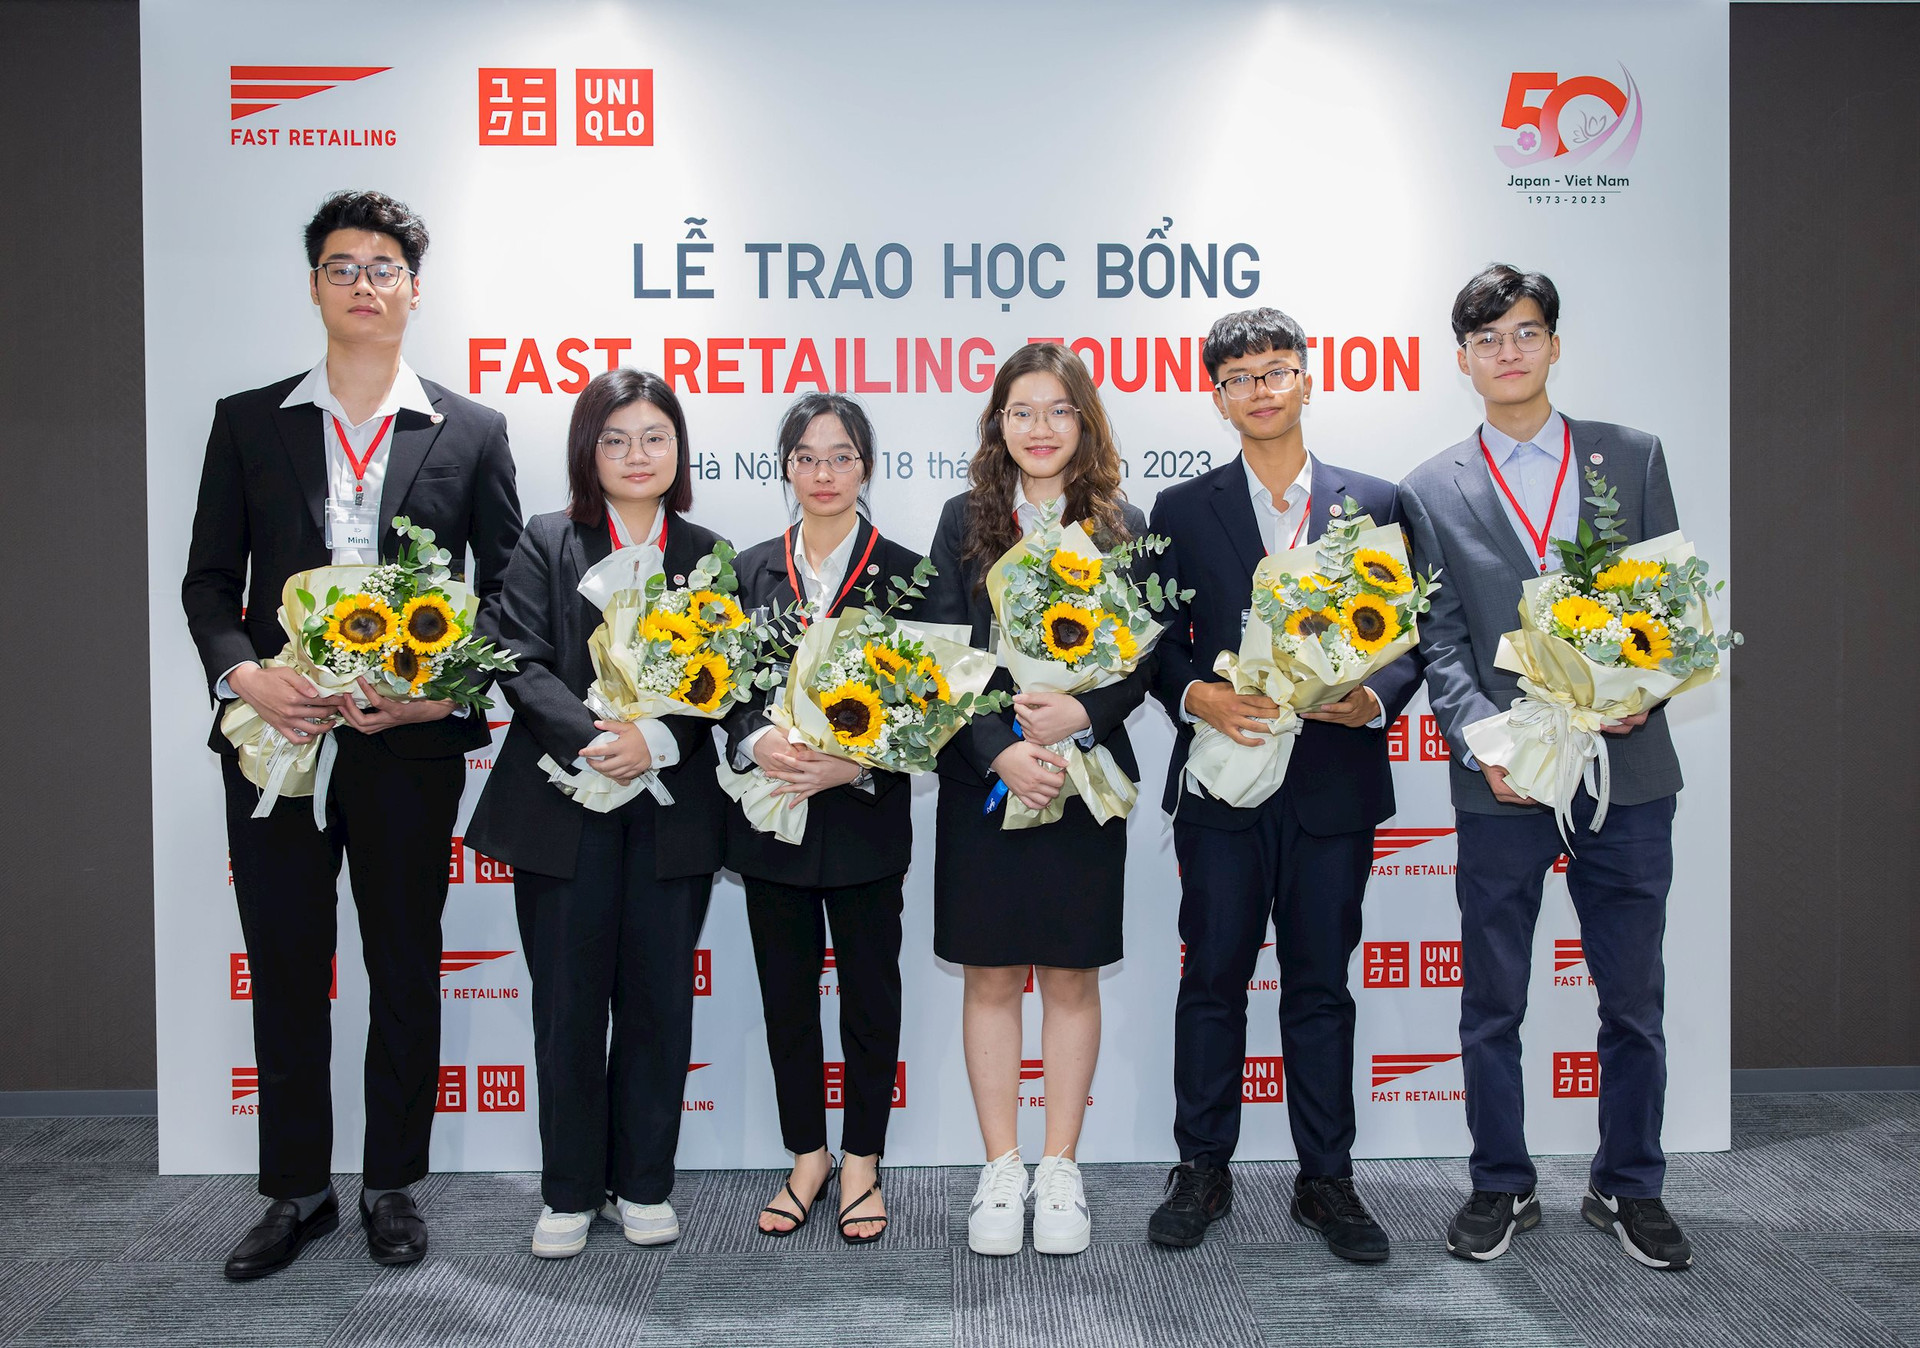 6 học sinh Việt xuất sắc được mời du học tại các trường danh giá bậc nhất Nhật Bản nhờ học bổng từ công ty mẹ của UNIQLO - Ảnh 2.